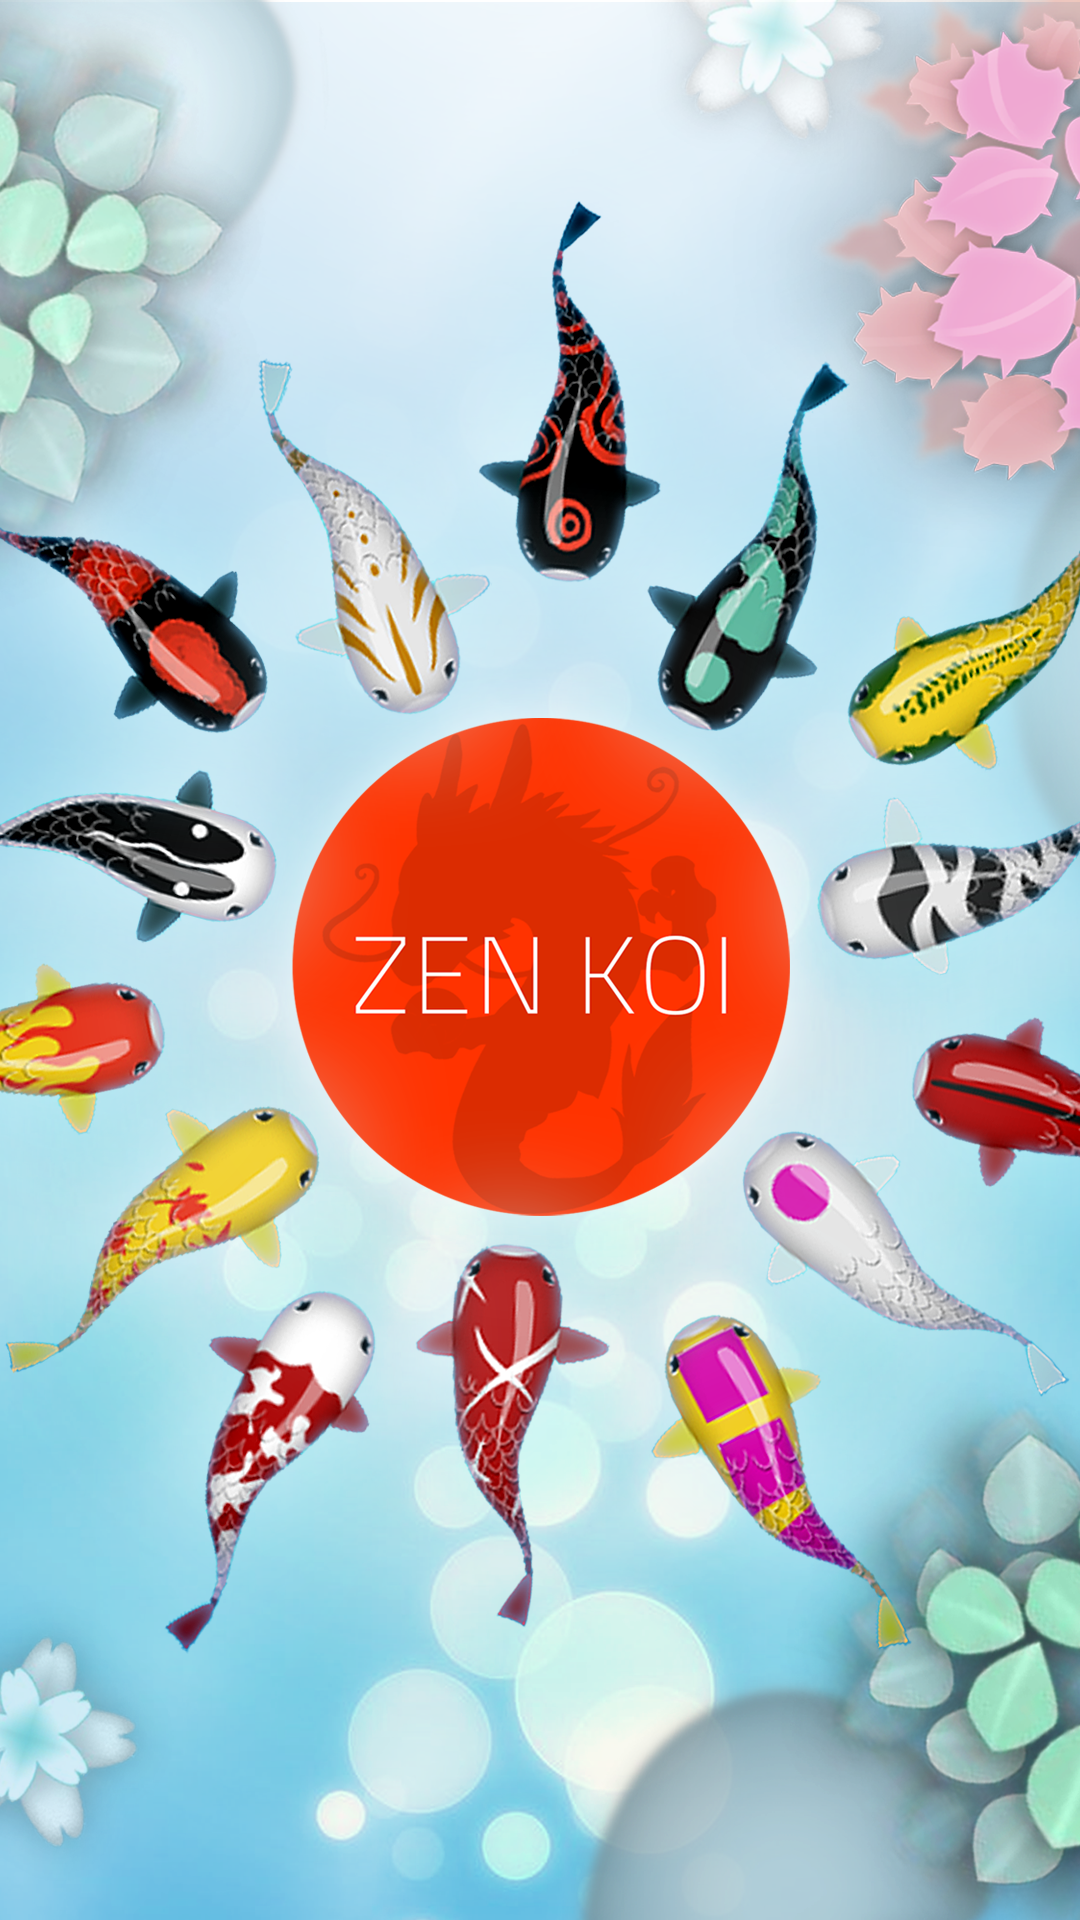 Zen Koi Classic 禅の鯉のキャプチャ